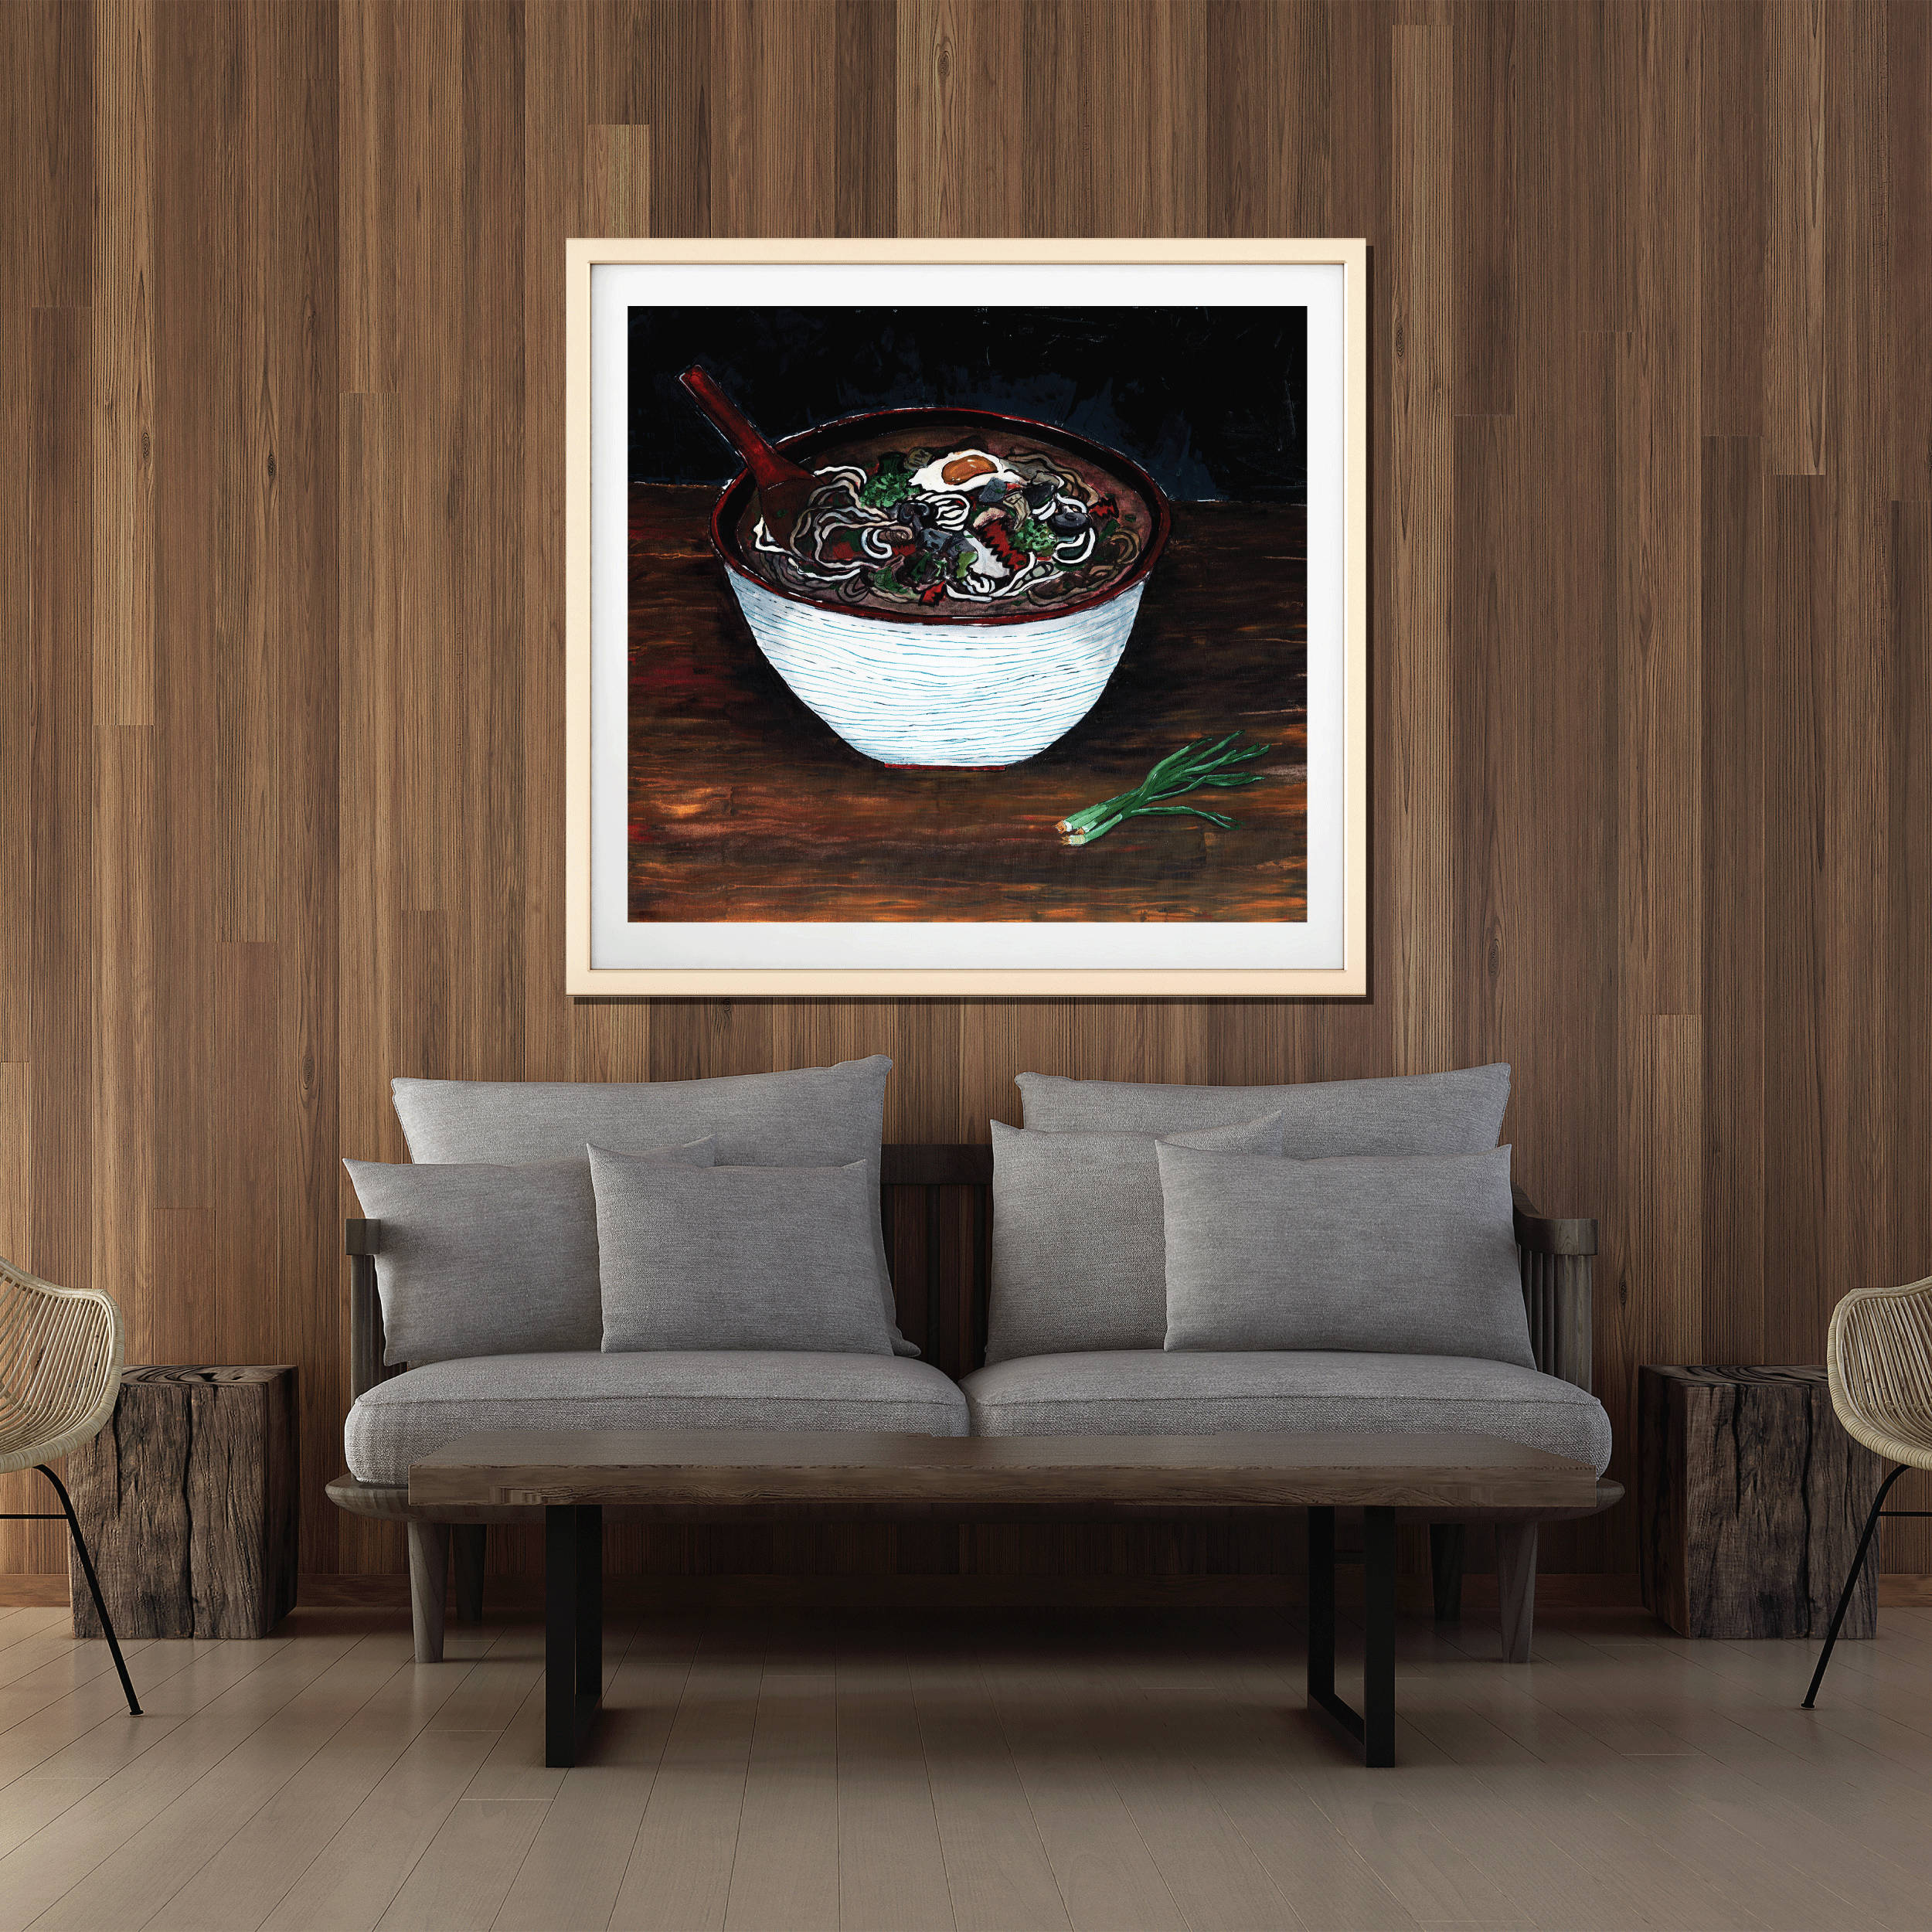 Noodle Soup Art Print, Food Art, Painting Of Food, Udon Noodle, Commercial Art Print, Restaurant Artwork, Modern Design, Interior Staging